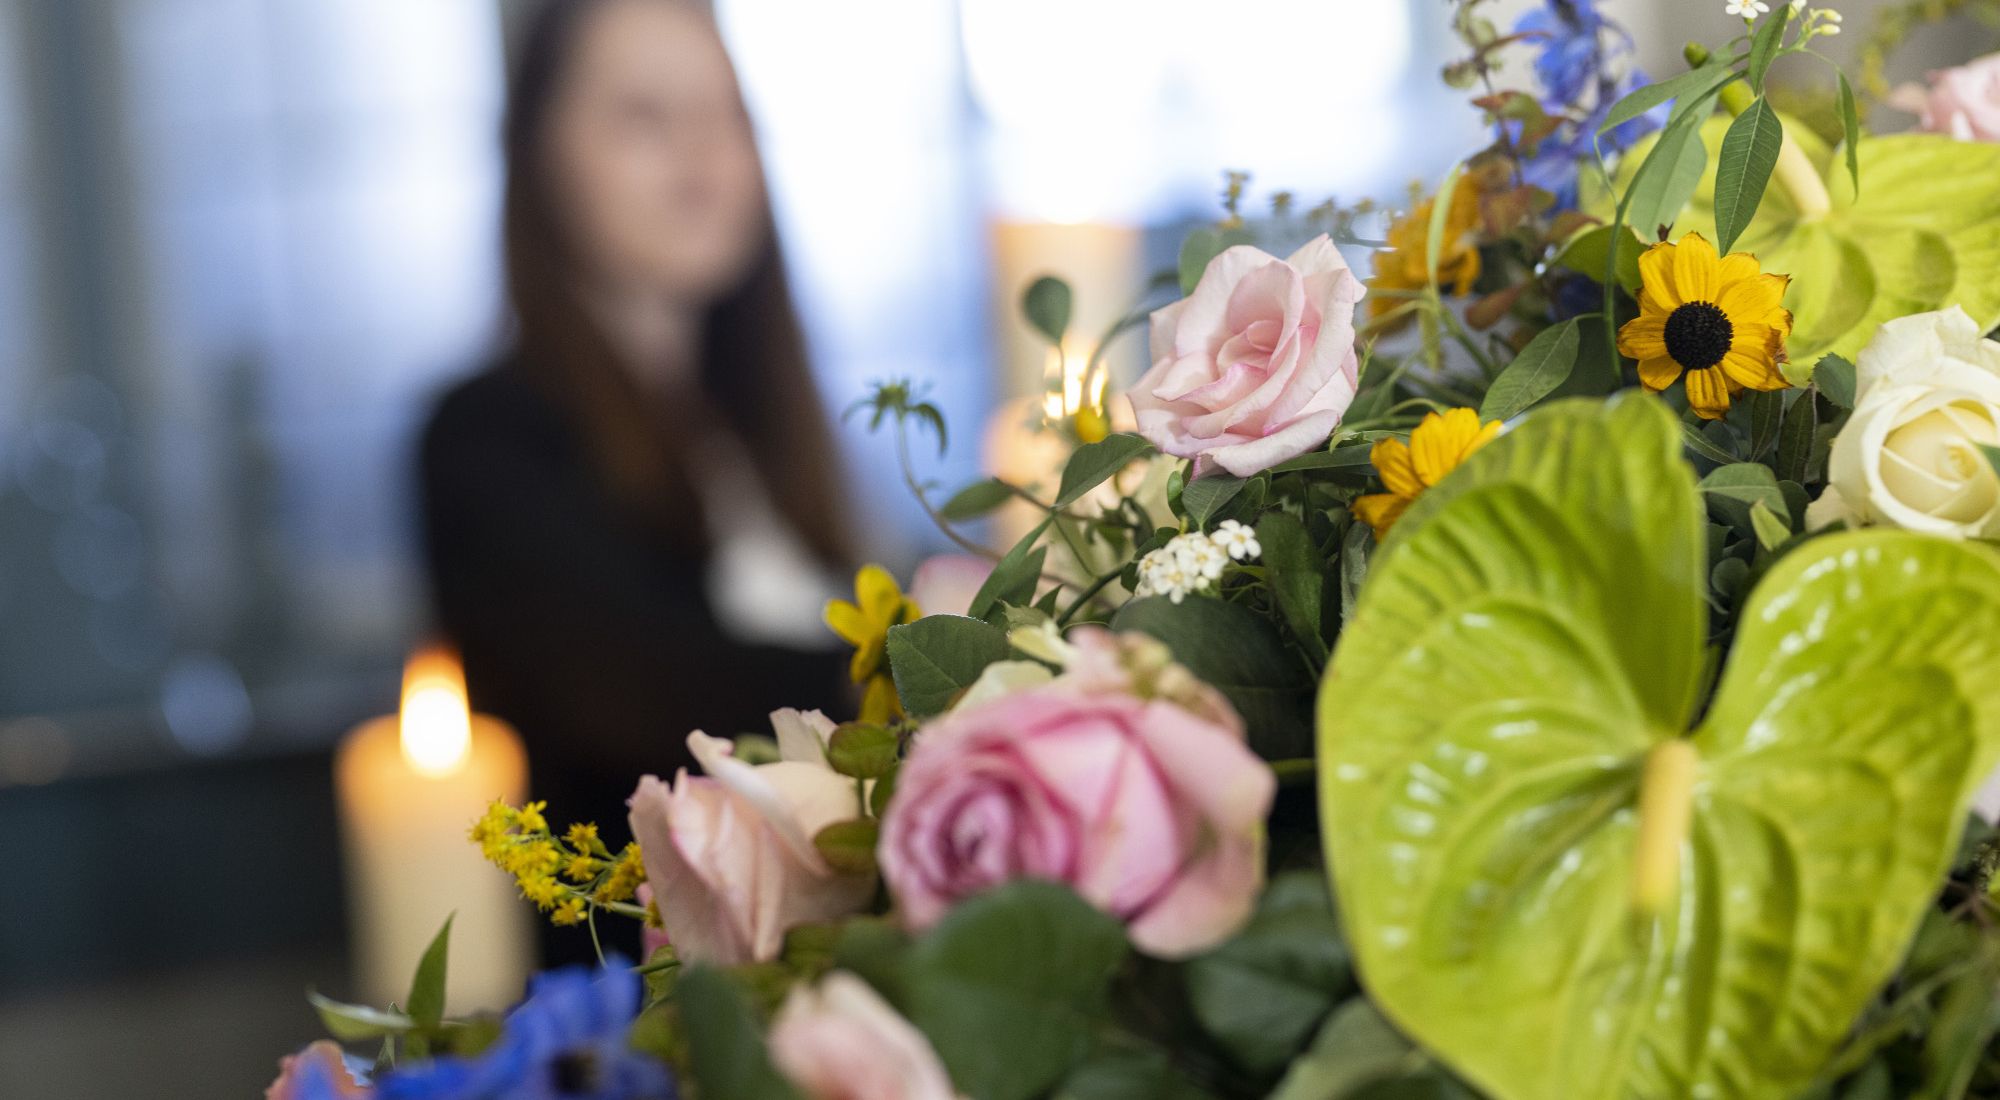 Blumendekoration bei einer Trauerfeier